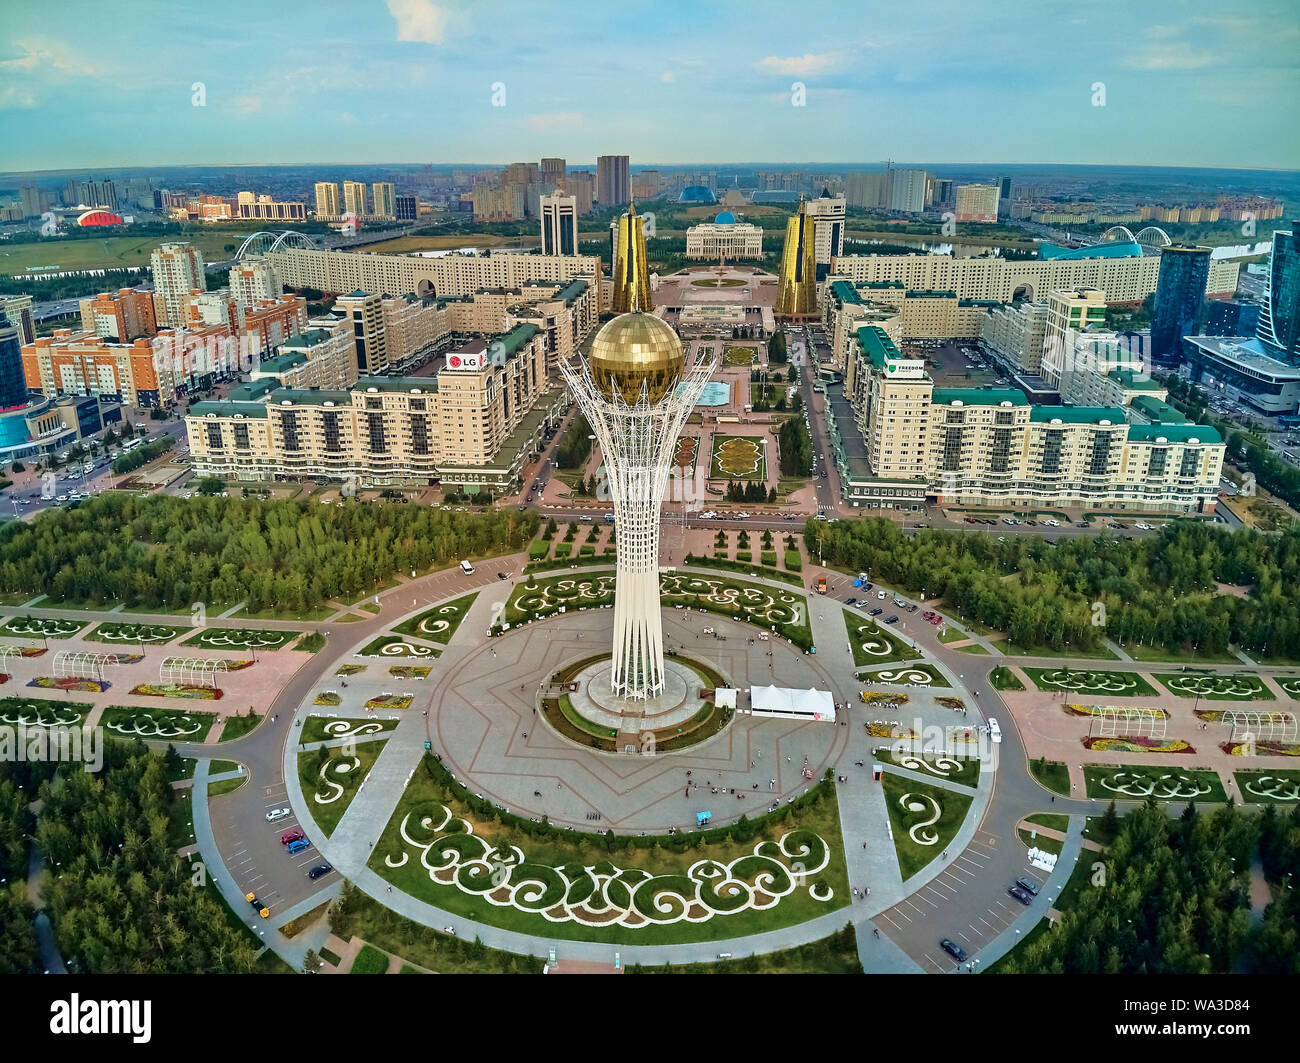 NUR-Sultan, le Kazakhstan (QAZAQSTAN) - le 29 juillet 2019 : Très belle vue panoramique vue de drone aérien Nursultan (Astana) centre ville avec des gratte-ciel et Baite Banque D'Images